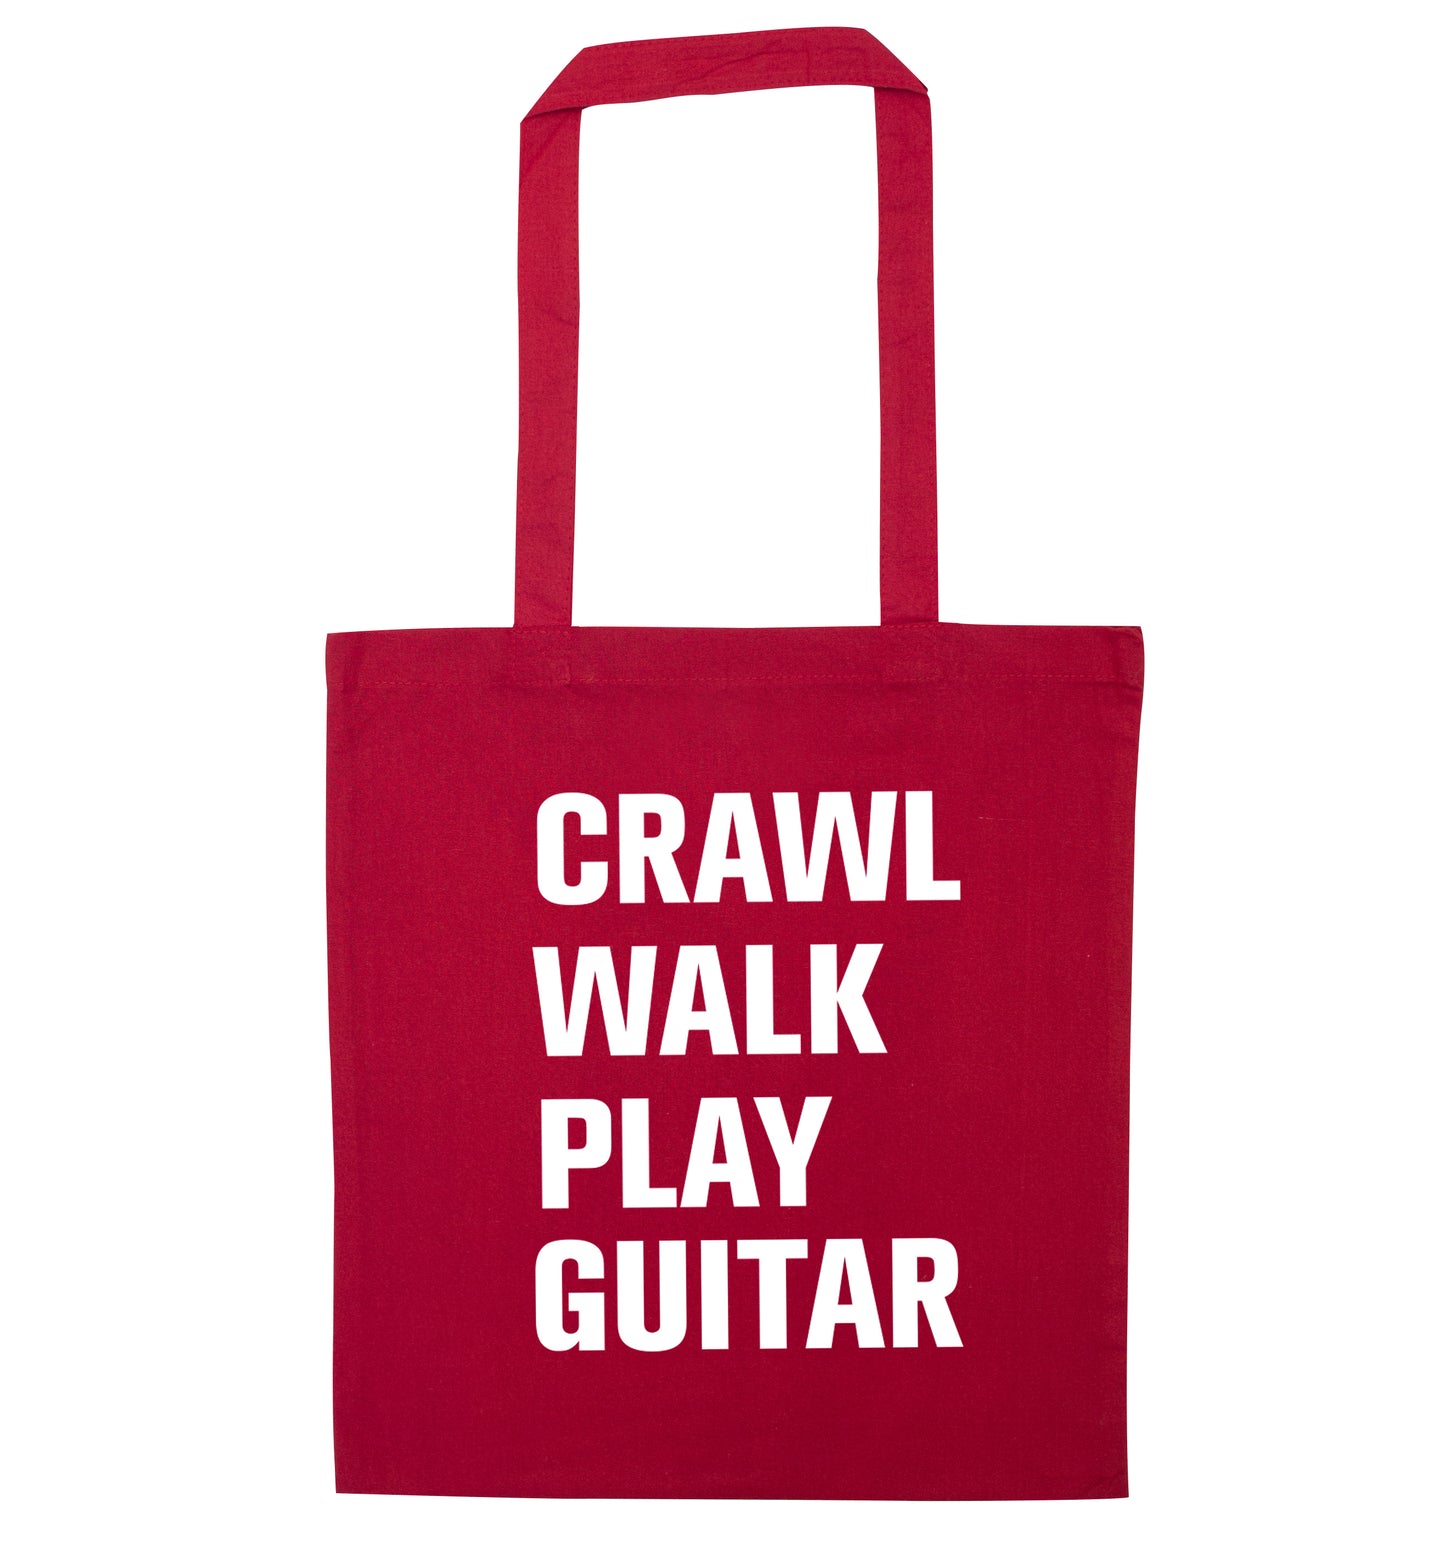 Crawl walk play guitar red tote bag